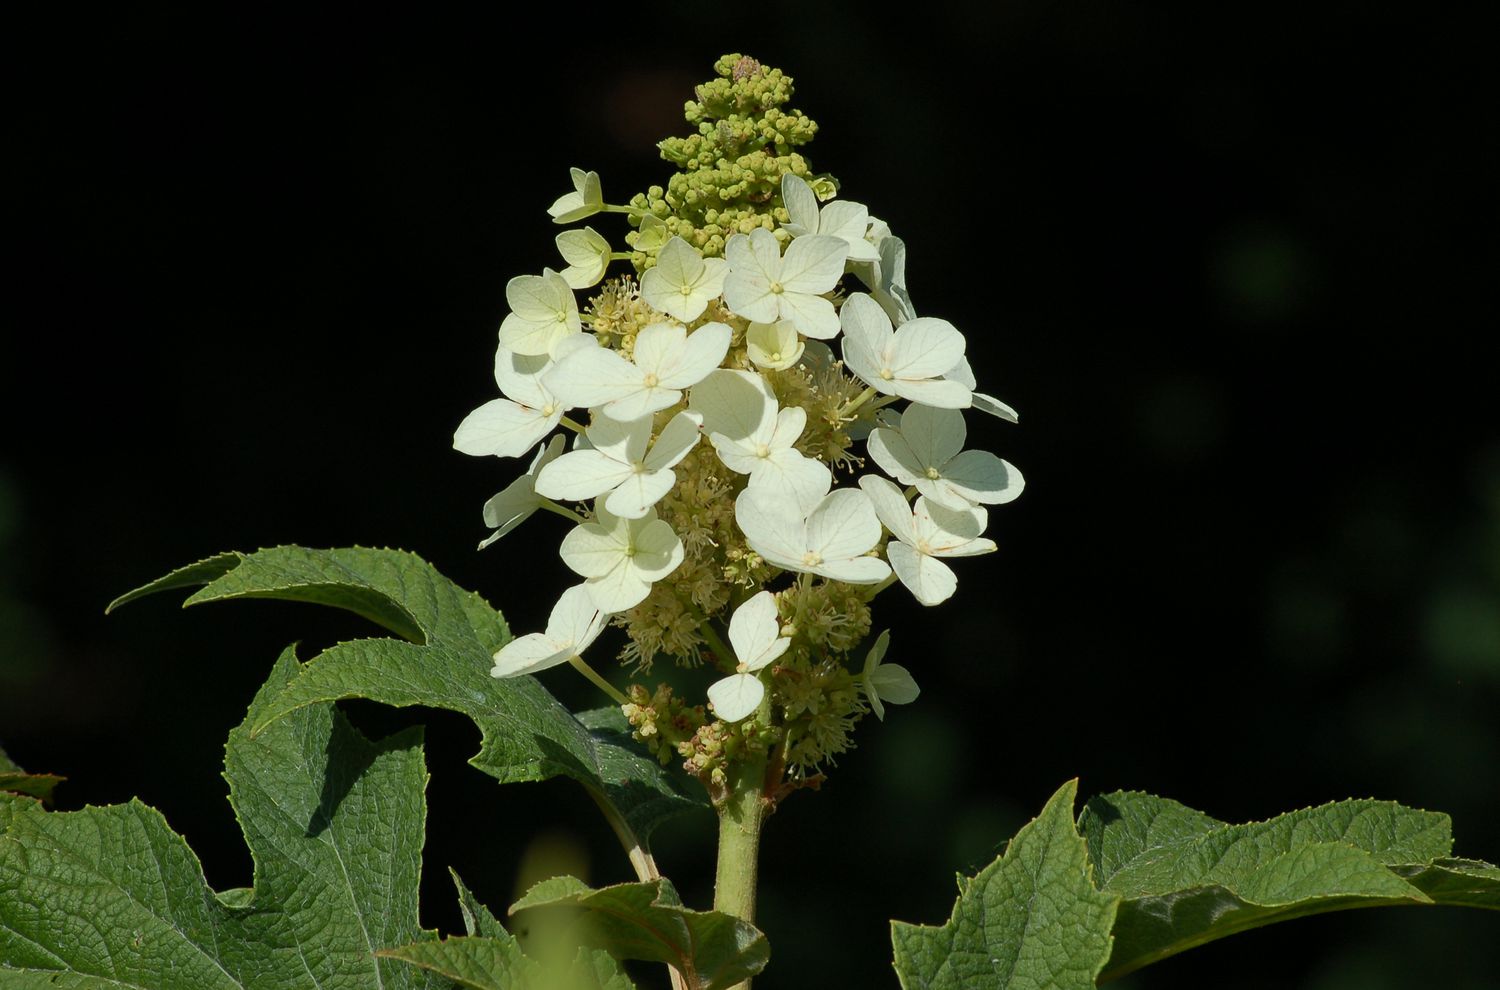 Cabeza de flor blanca del arbusto de hortensias de hoja de roble en flor.